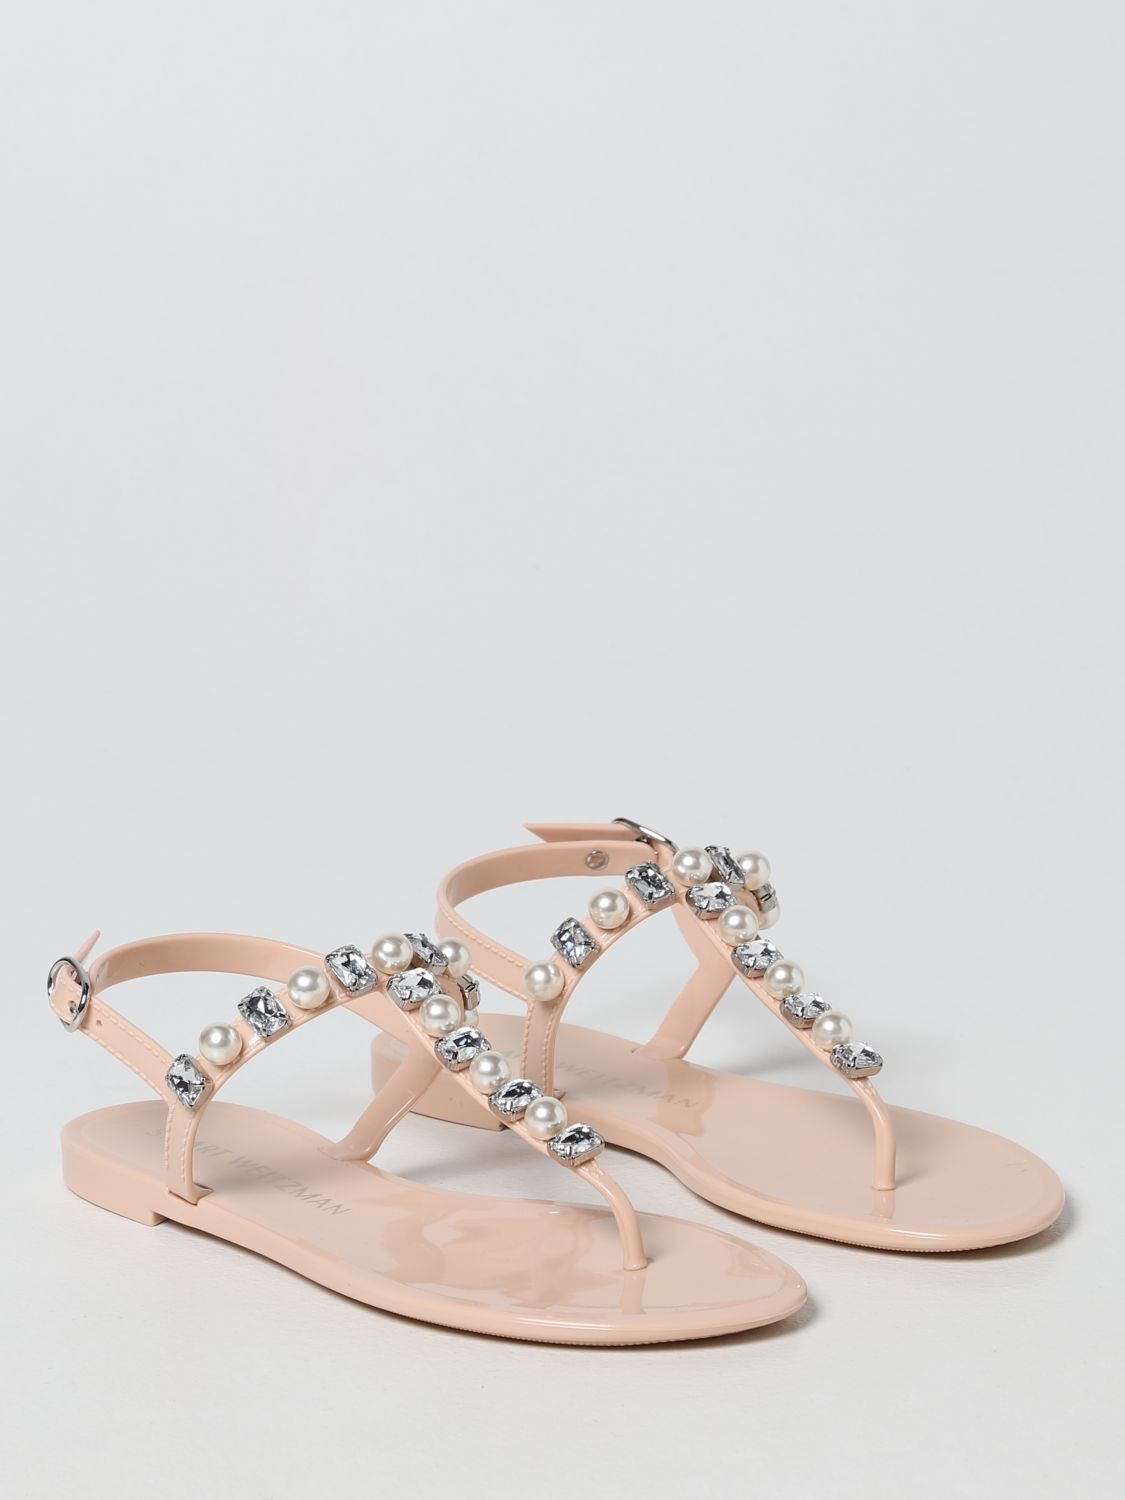 Flat sandals Stuart Weitzman: Goldie Jelly Stuart Weitzman sandals blush pink 2